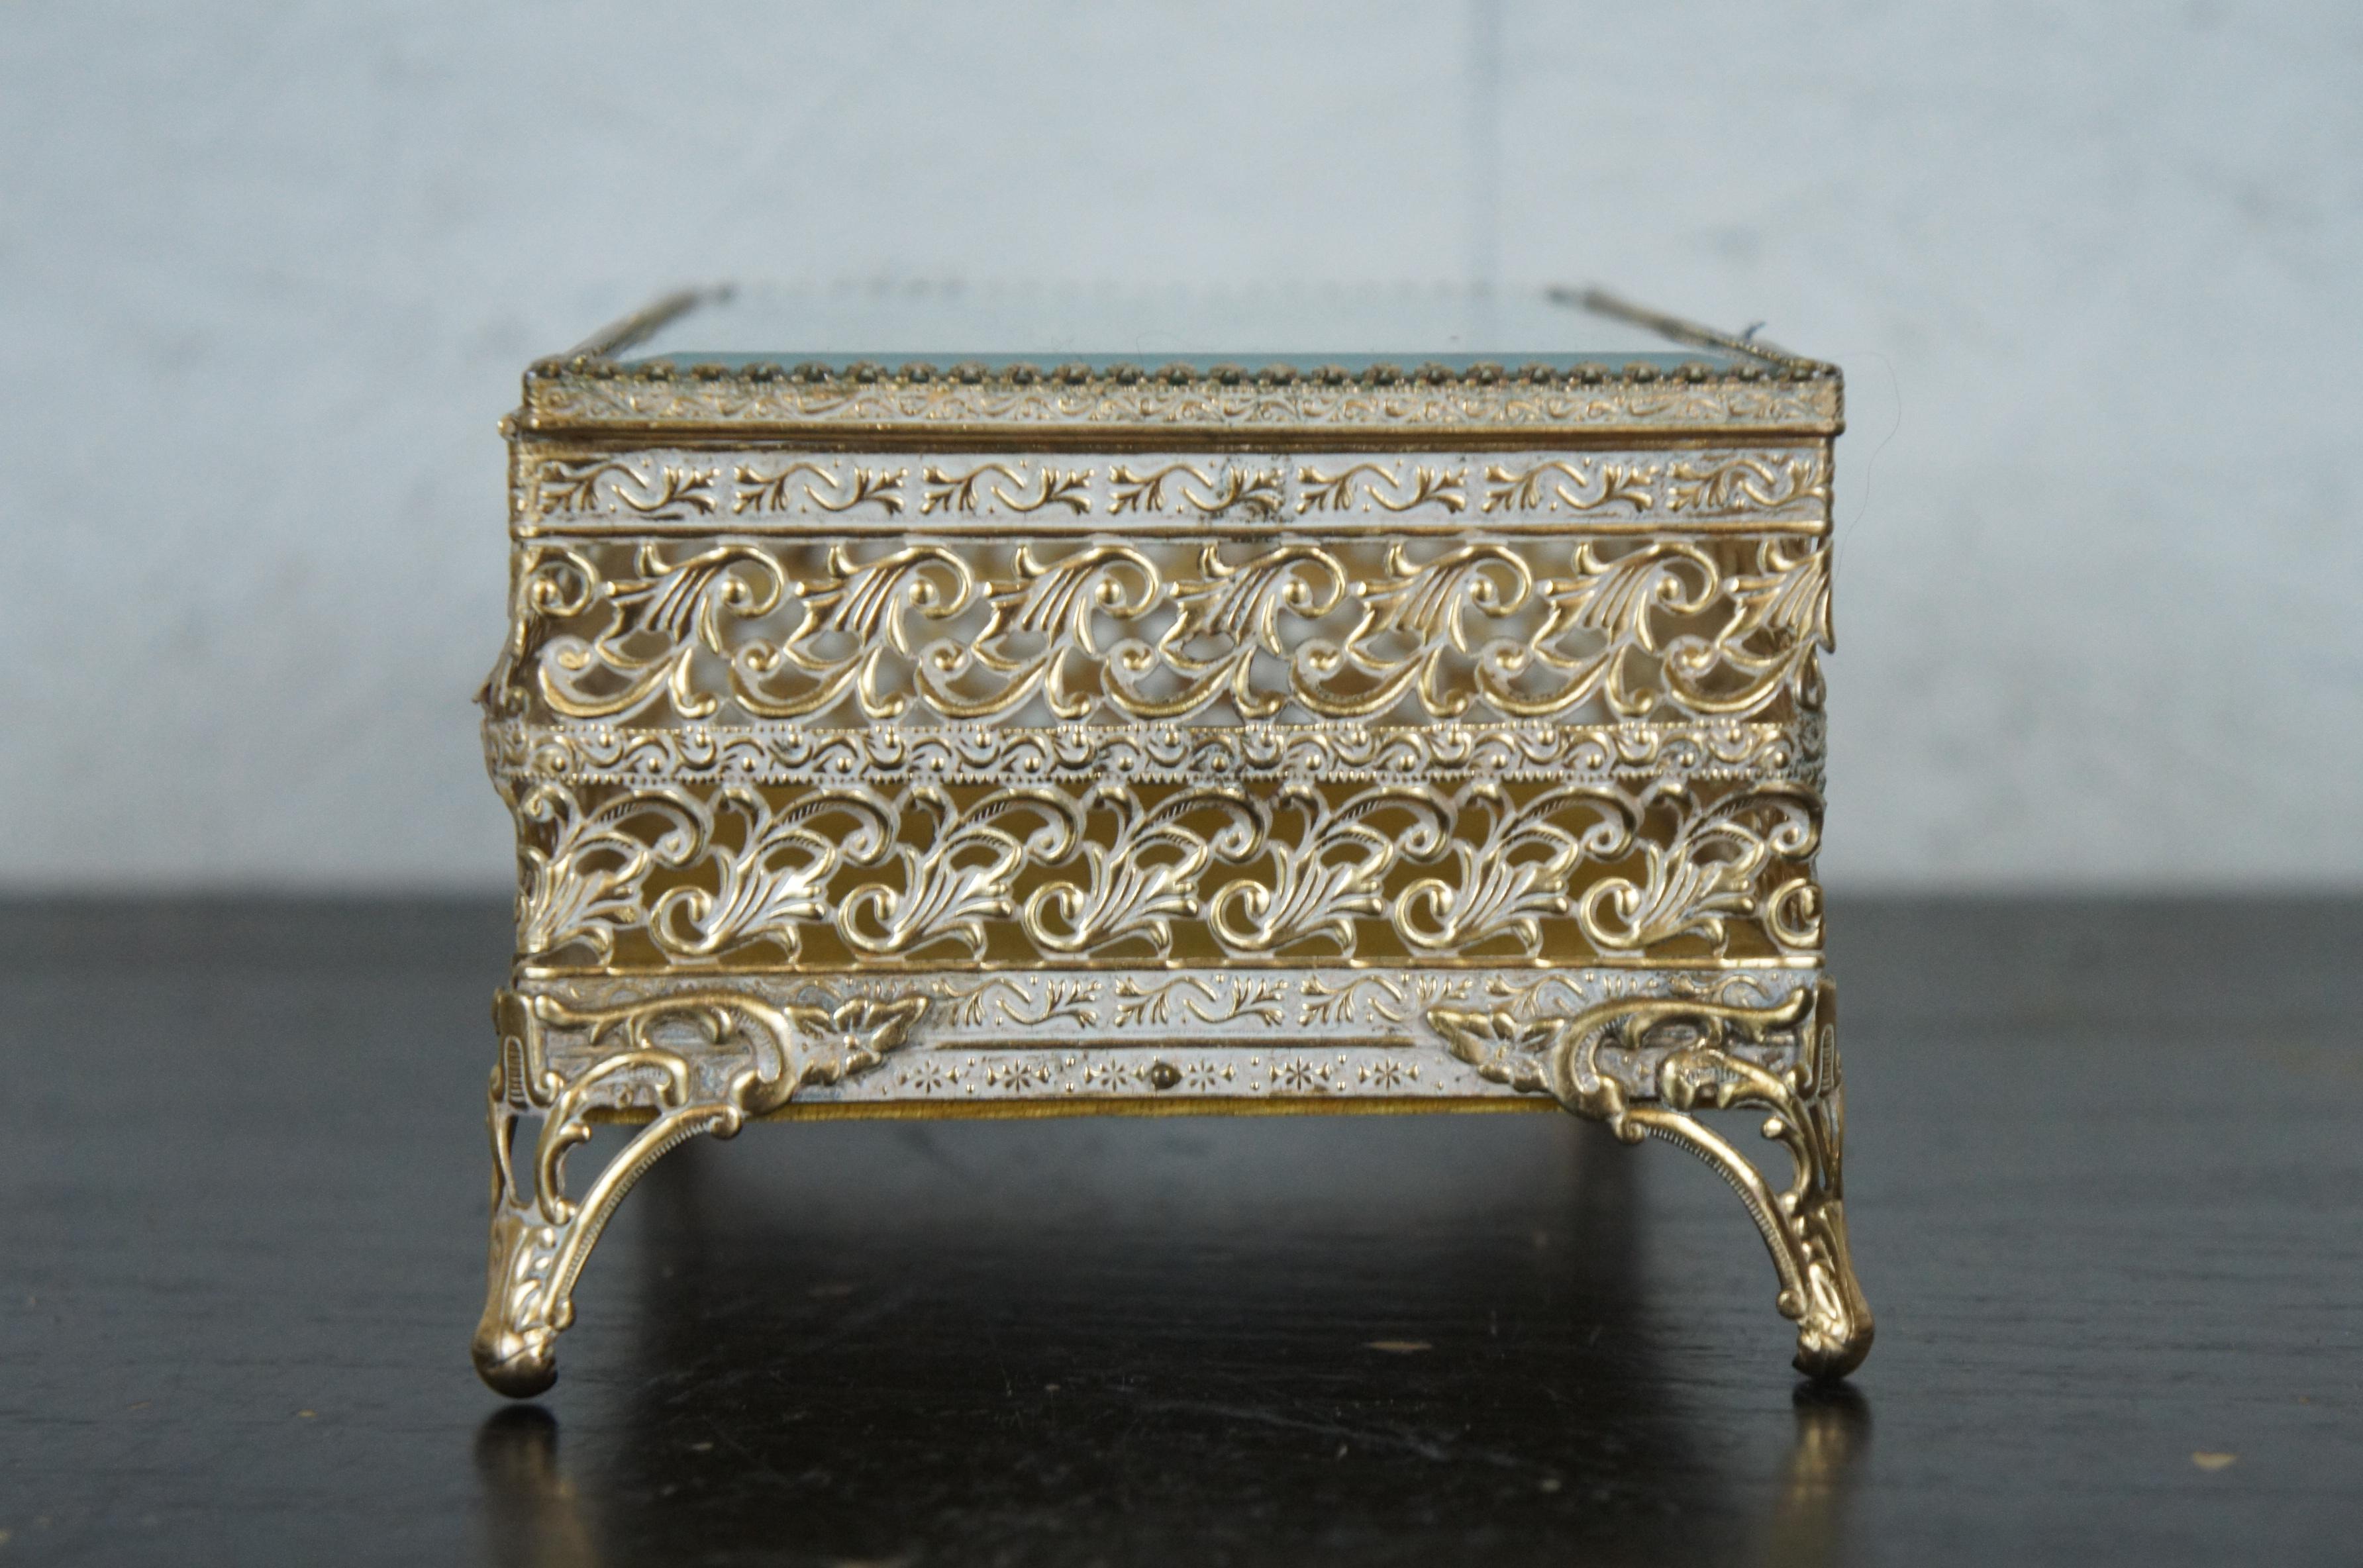 French Regency Brass Filigree Jewelry Casket Trinket Box with Beveled Glass 1